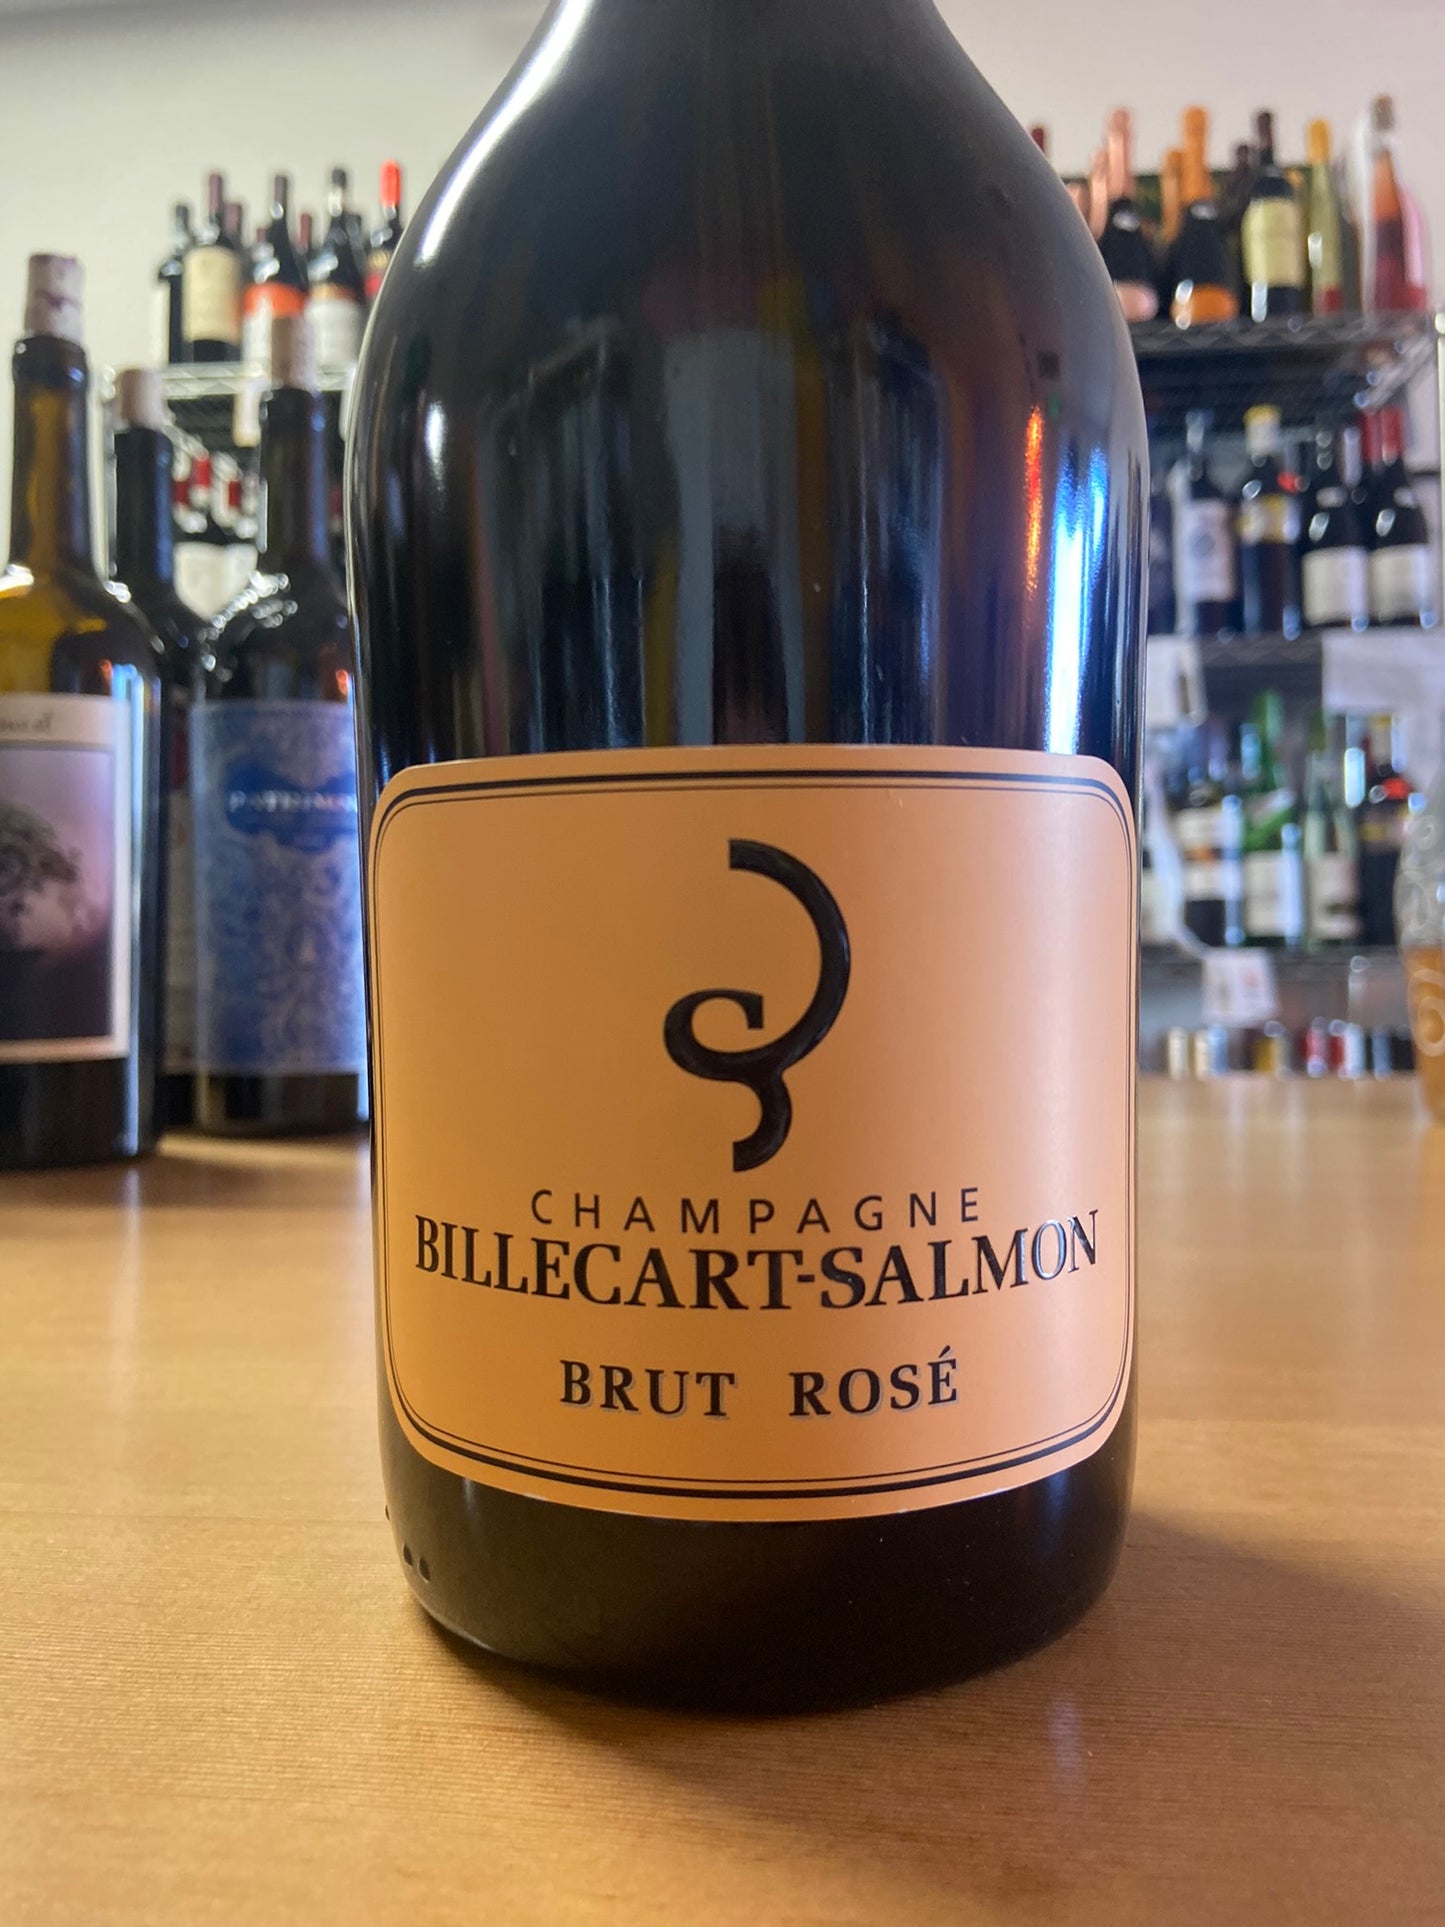 BILLECART-SALMON NV Champagne 'Brut Rose' (Champagne, France)